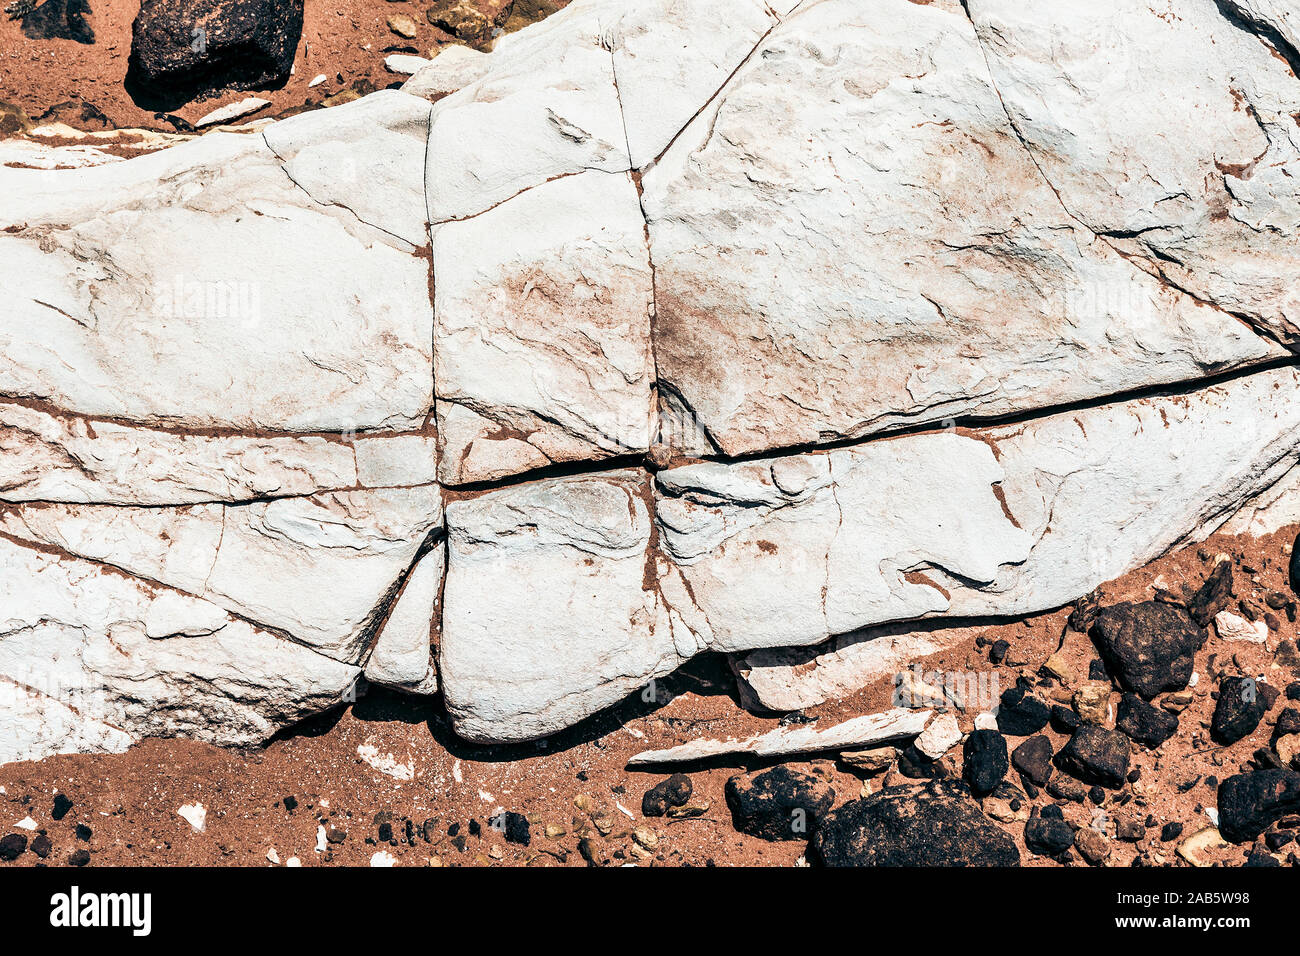 Ein schoener Hintergrund, bestehend aus australischem Gestein Foto Stock